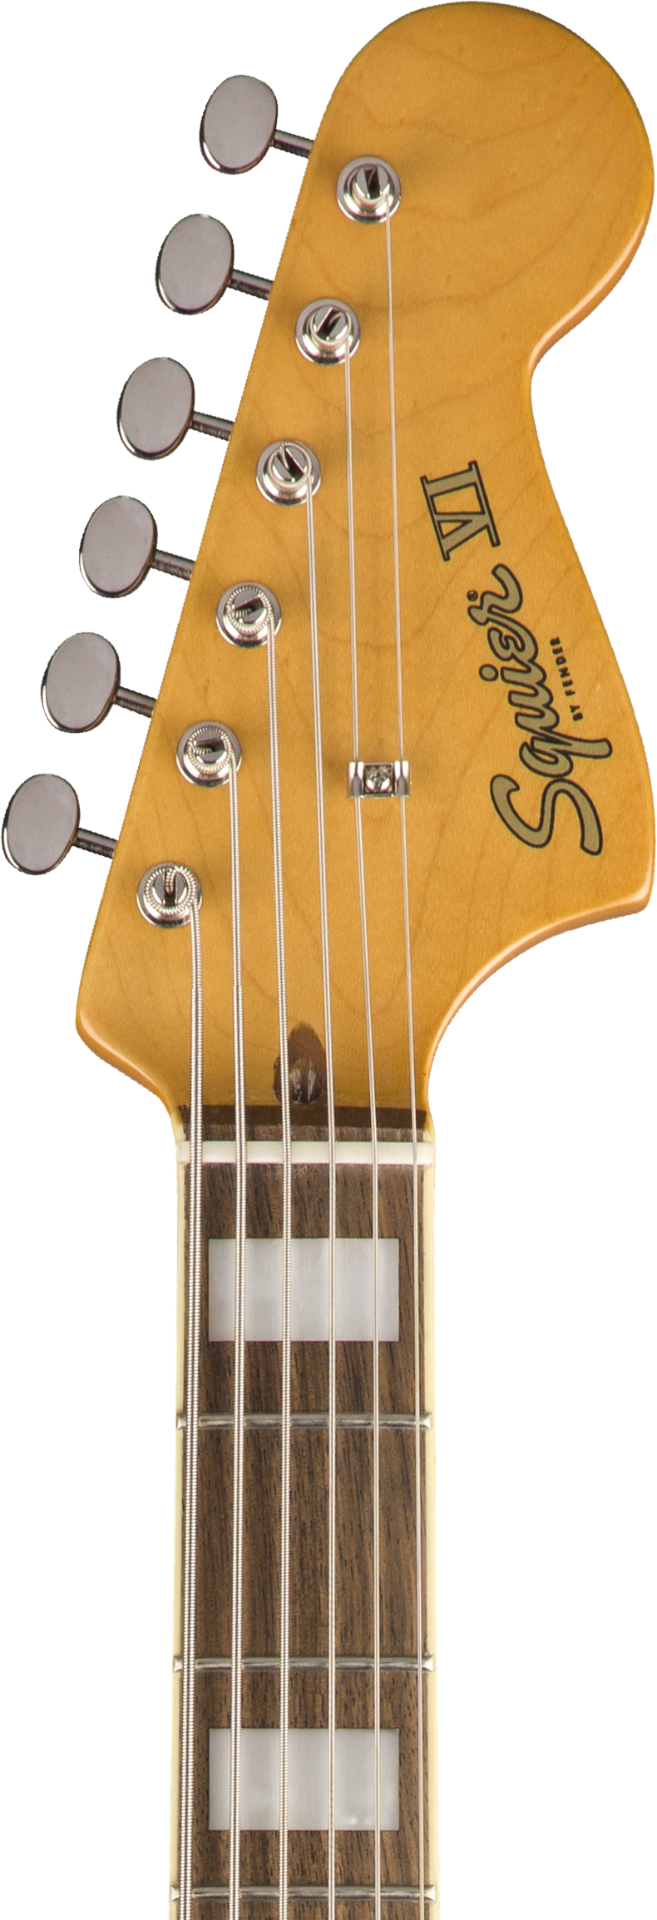 Squier by Fender Classic Vibe Bass VI - Laurel - 3-Color Sunburst